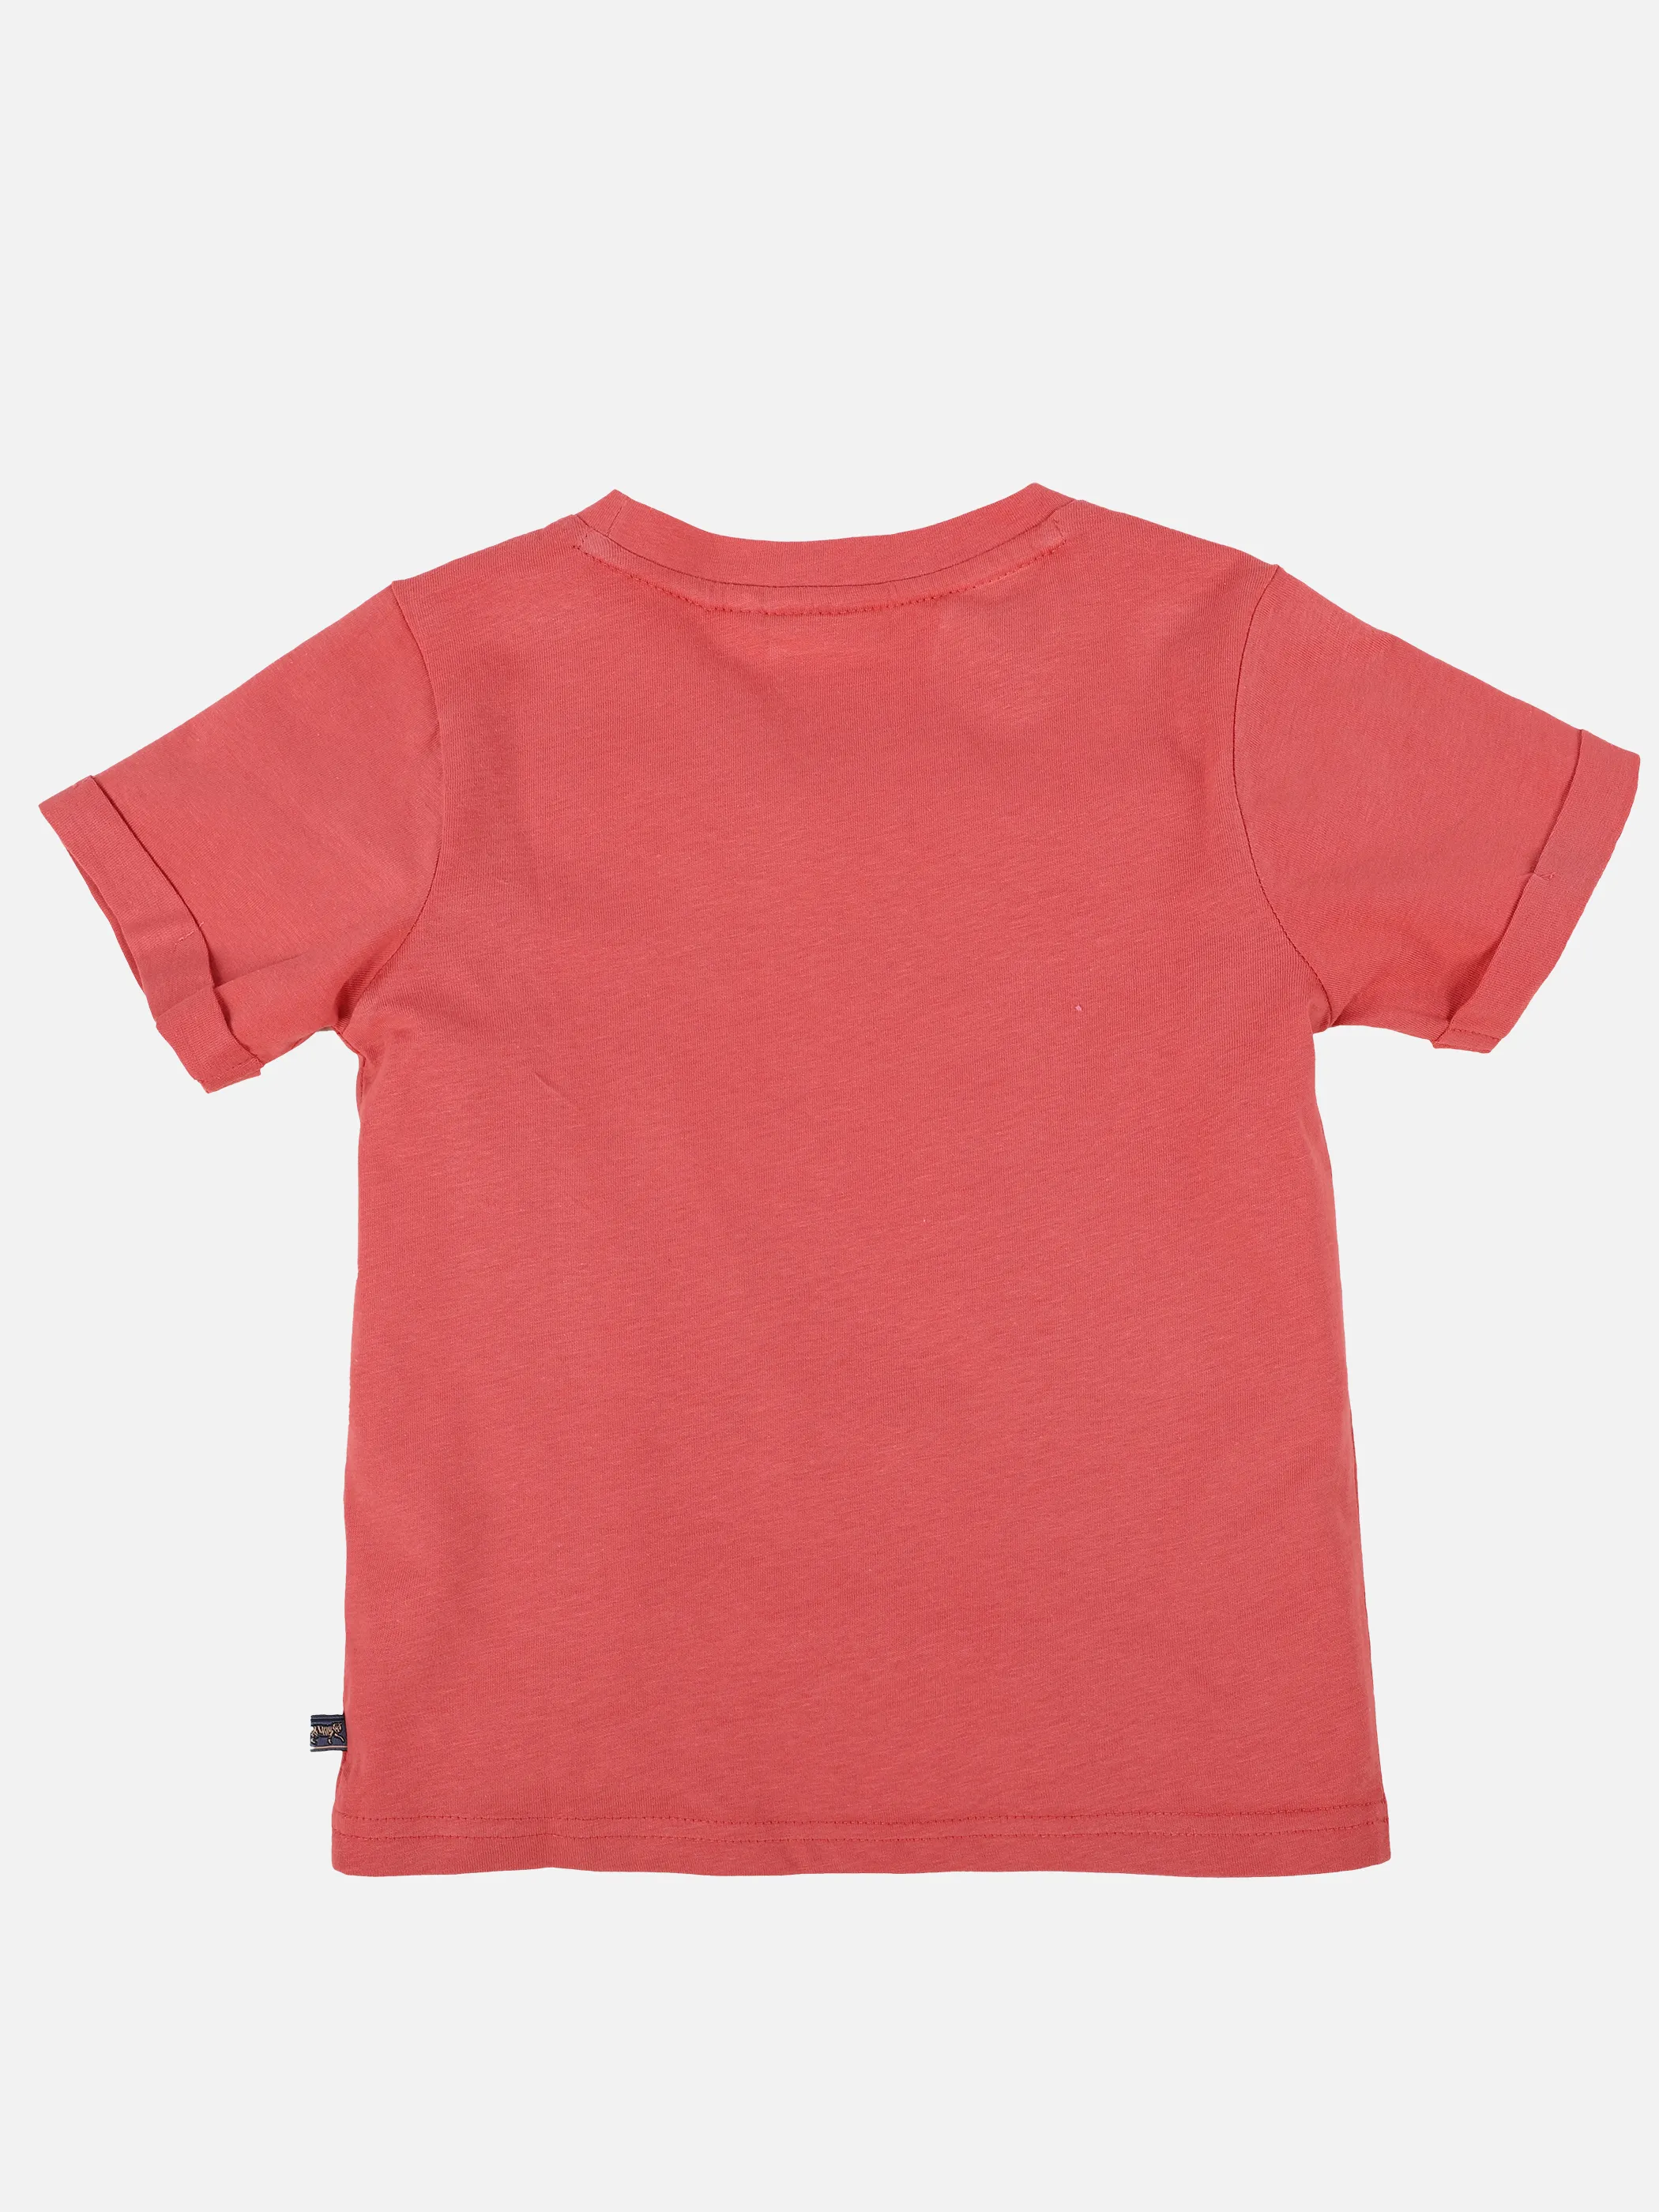 Stop + Go KJ T-Shirt mit Skater Frontdruck in rot Rot 891517 ROT 2